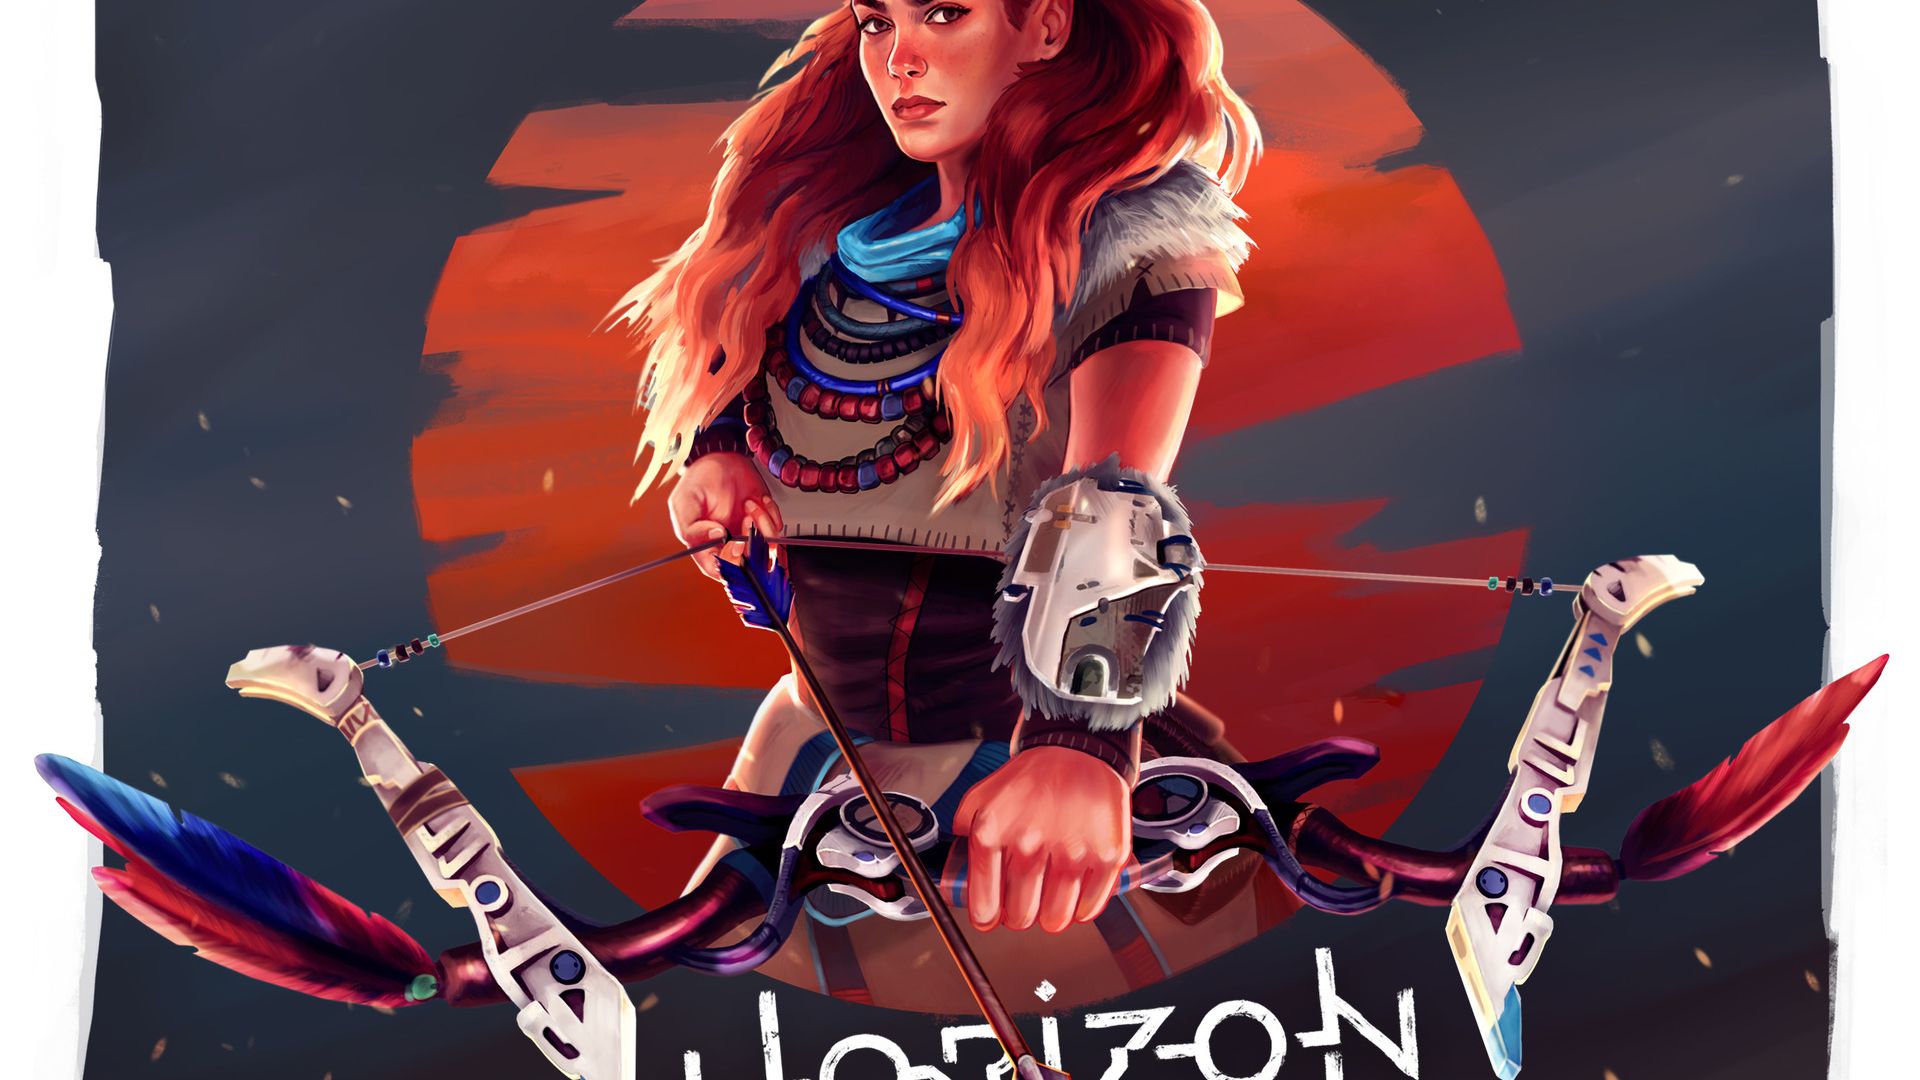 Wallpaper Horizon zero dawn, Aloy, girl warrior